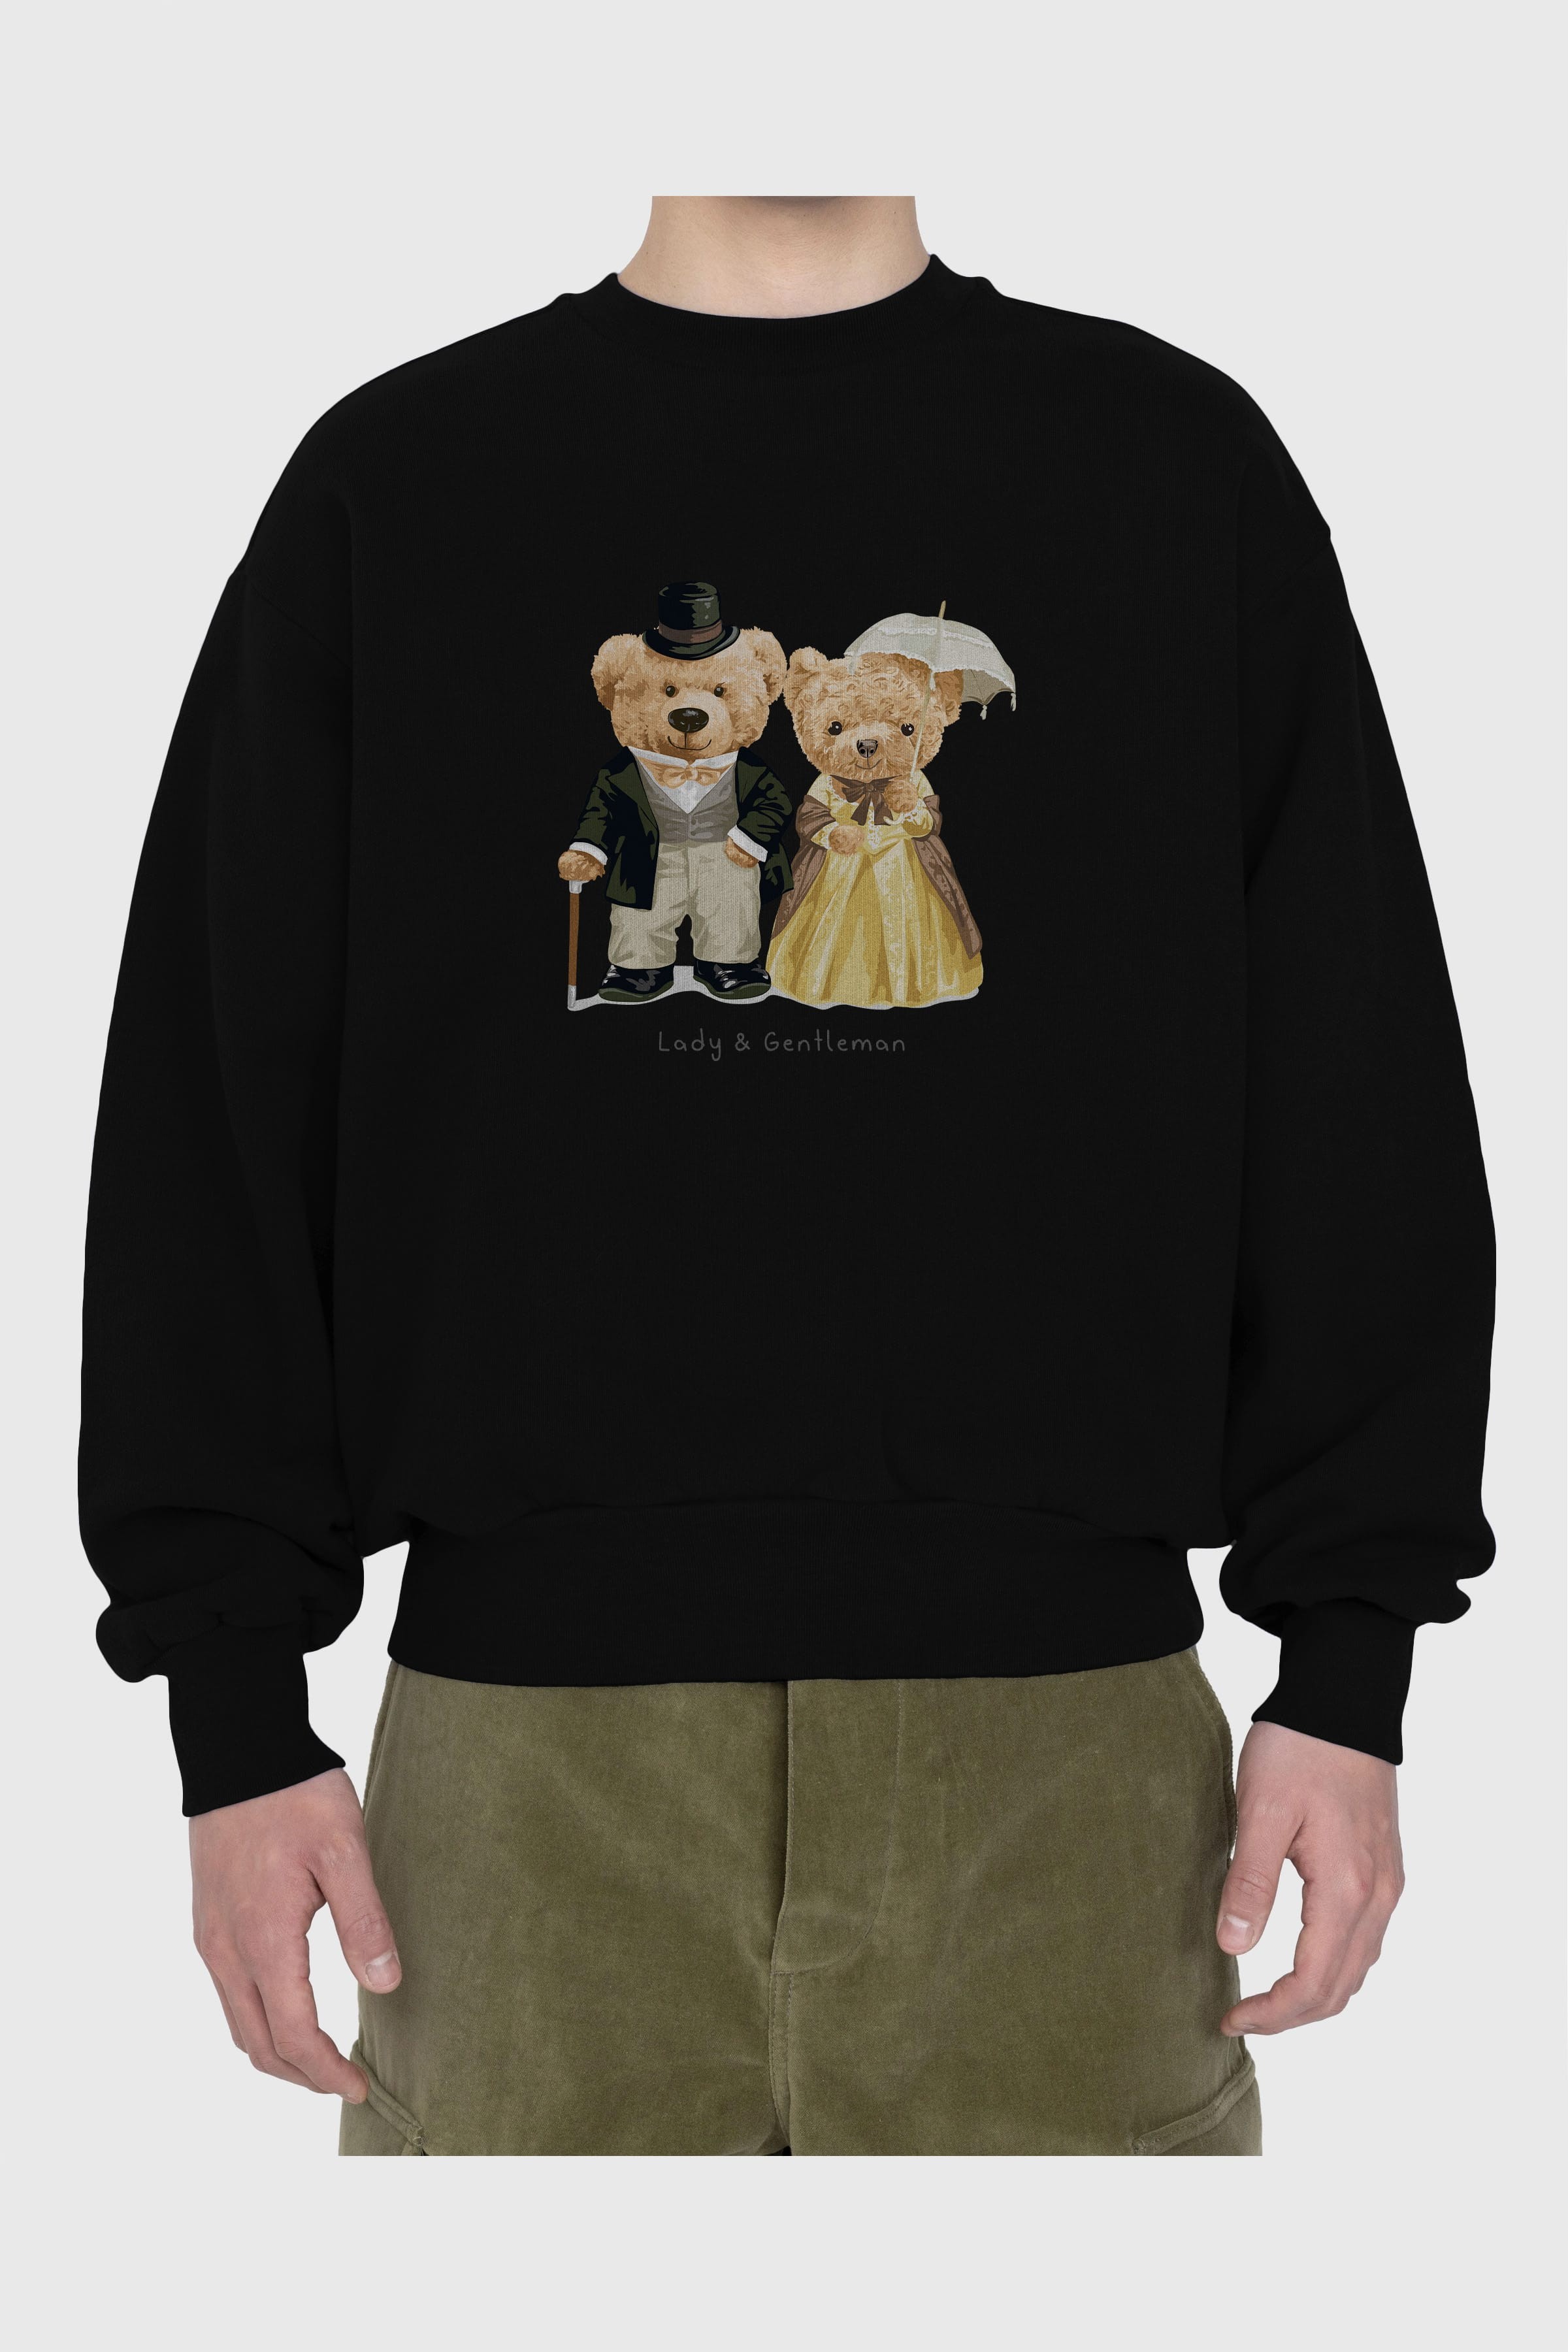 Teddy Bear Couple Ön Baskılı Oversize Sweatshirt Erkek Kadın Unisex